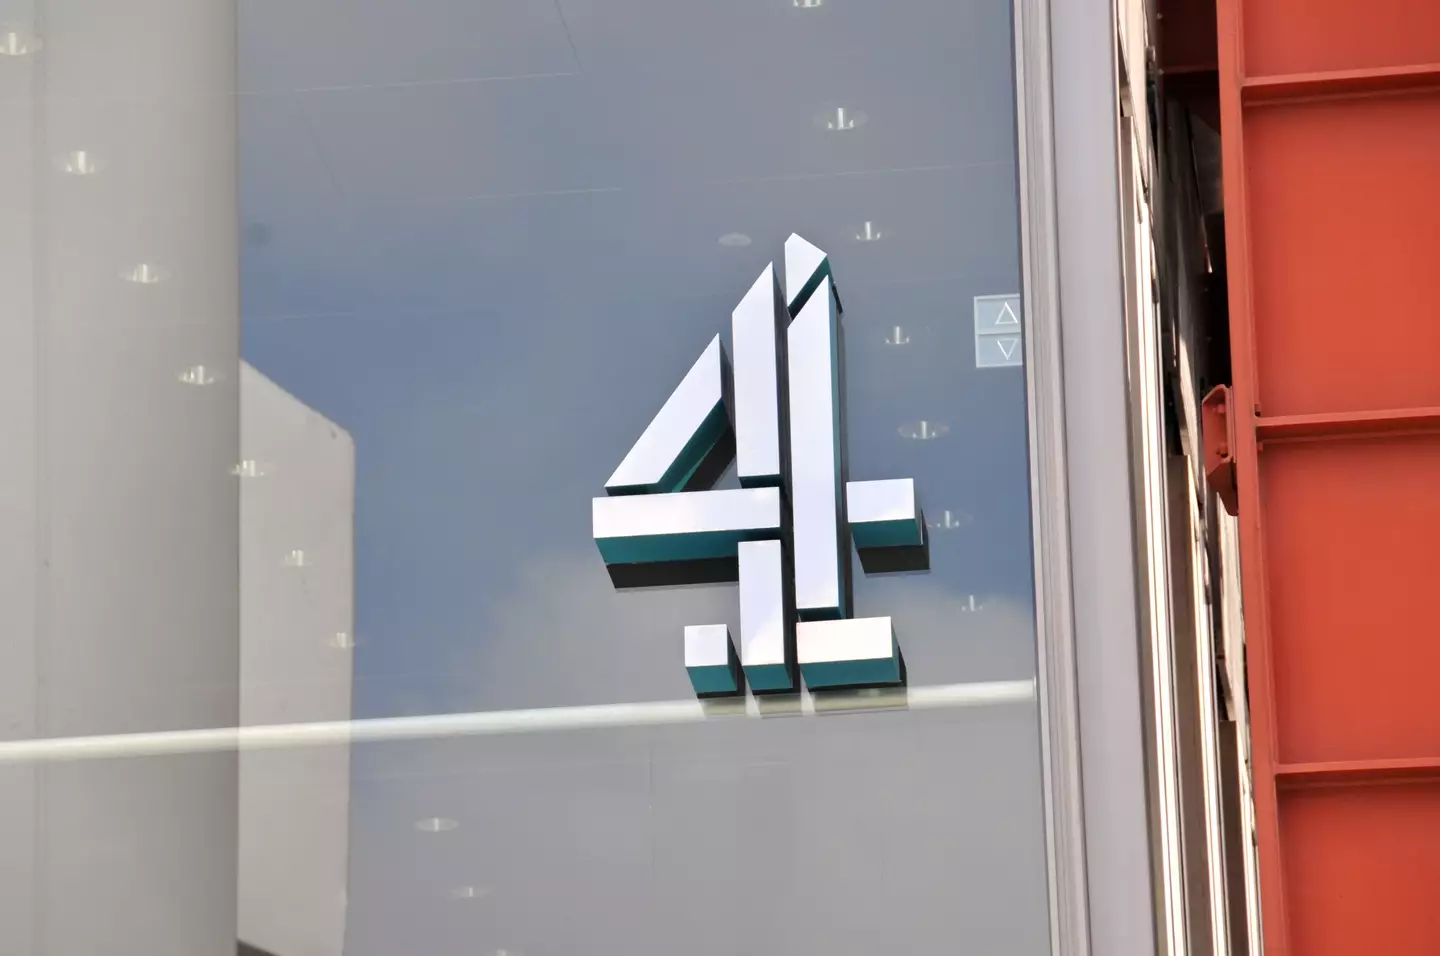 Channel 4 headquarters in London.